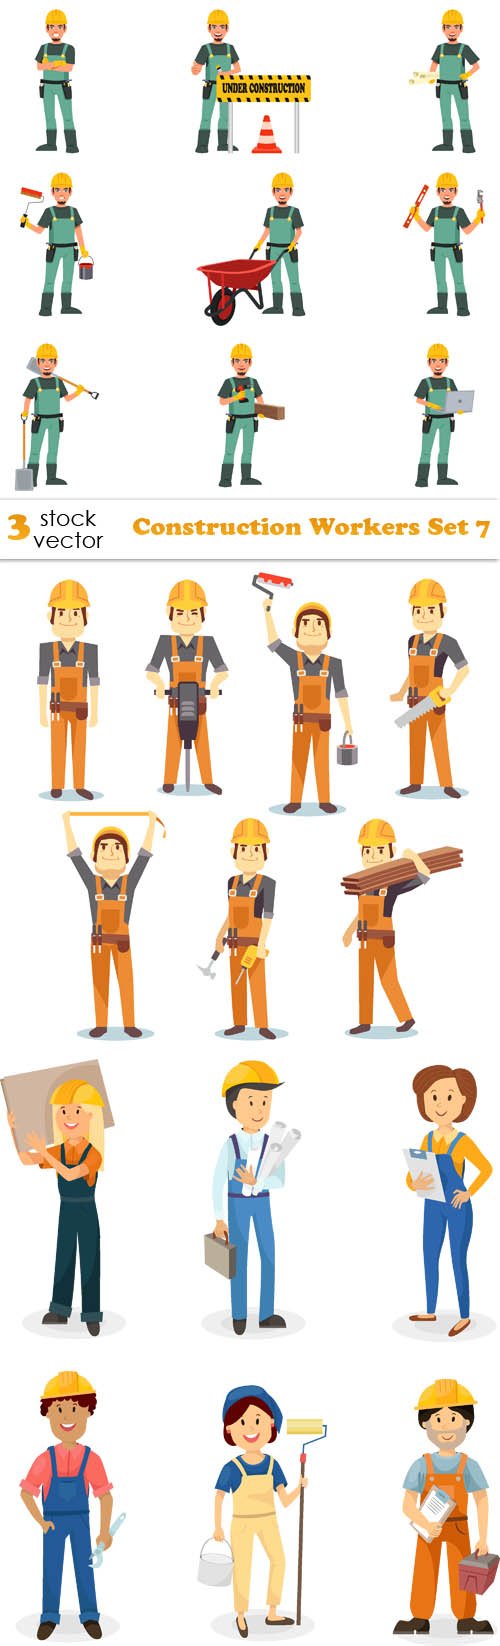 Vectors - Construction Workers Set 7